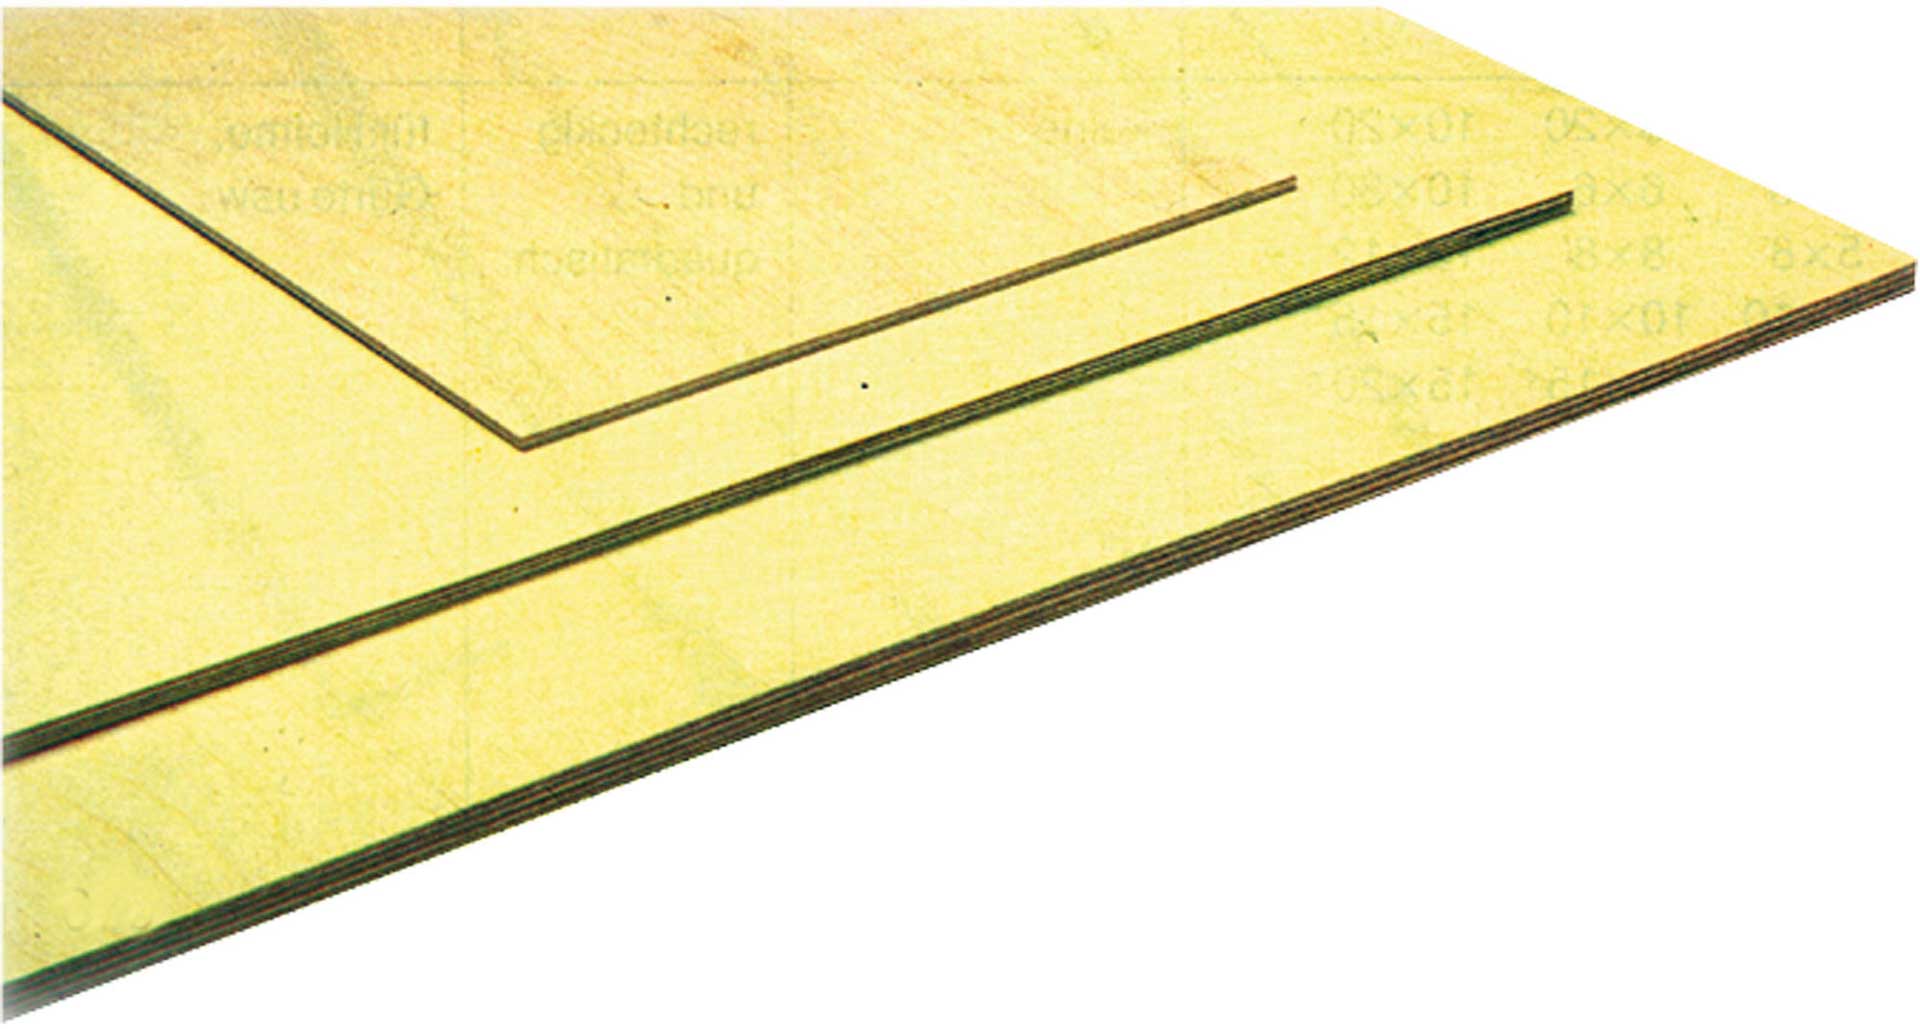 MODELLBAU LINDINGER poplar plywood 3x300x1200mm